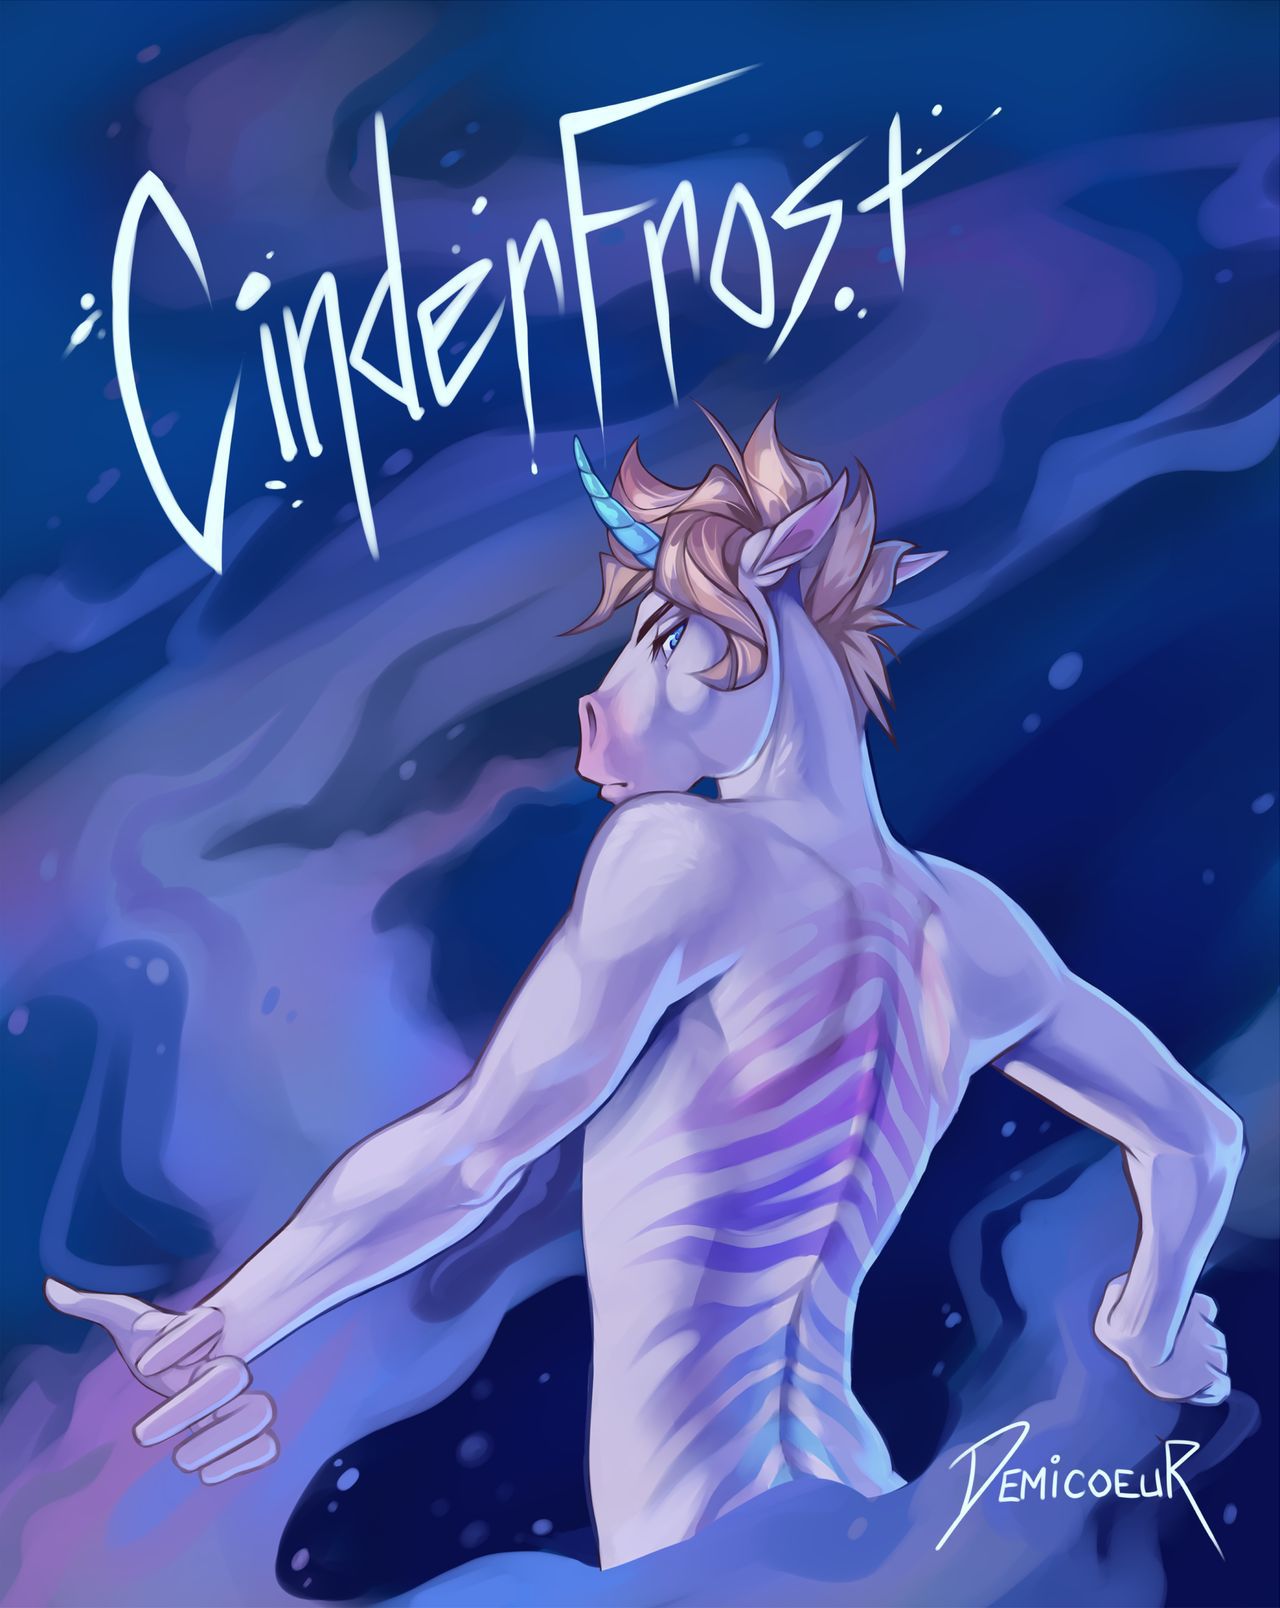 [Demicoeur] CinderFrost 43